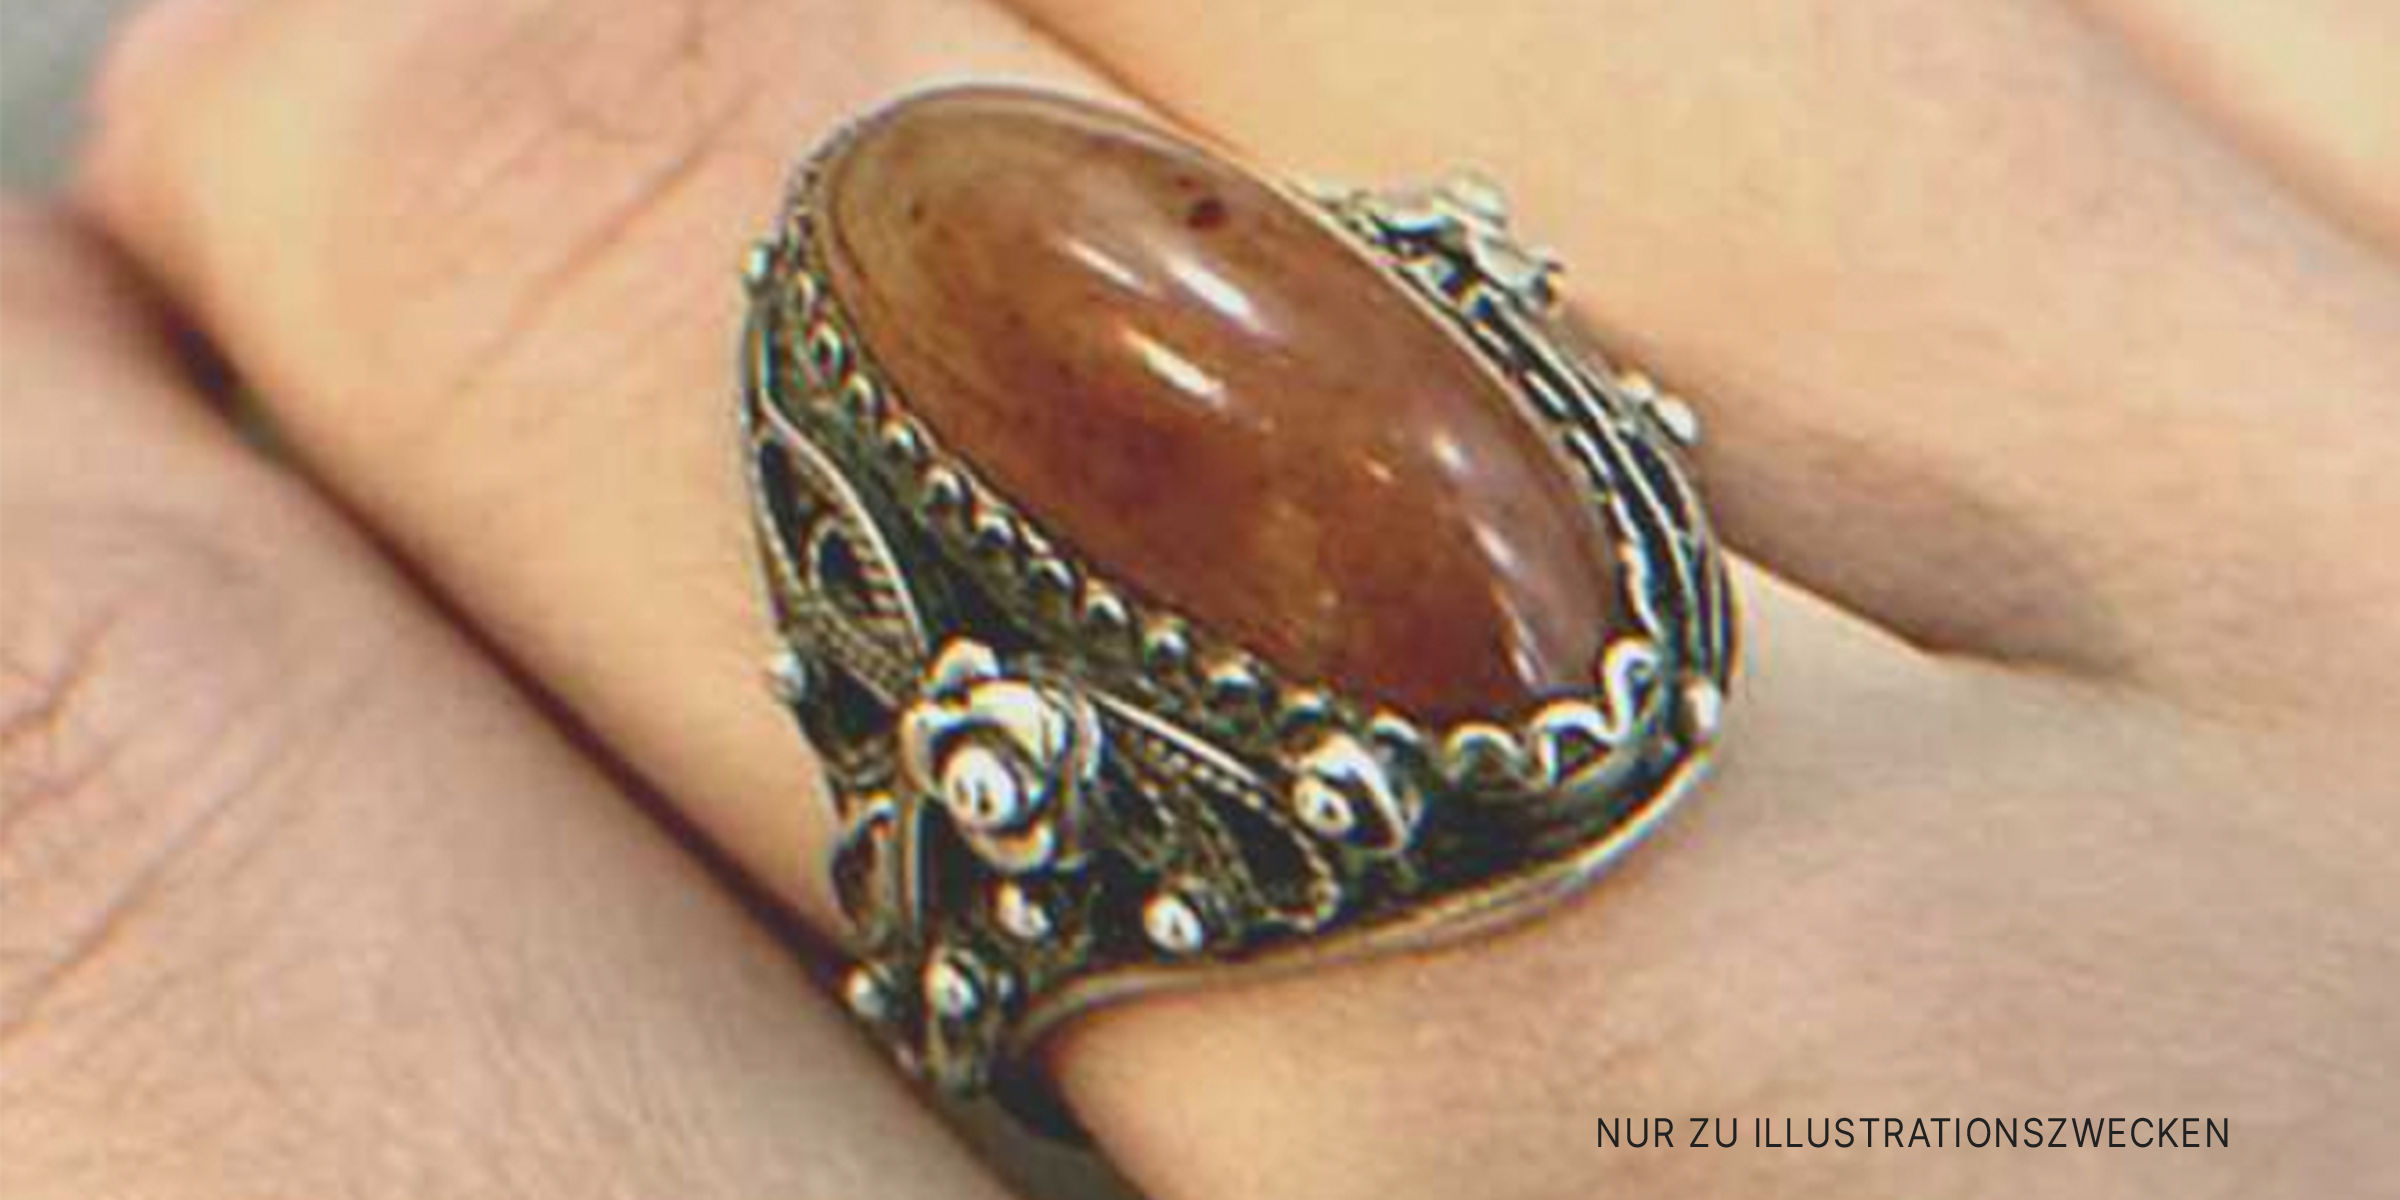 Antiker Ring am Finger | Quelle: Shutterstock